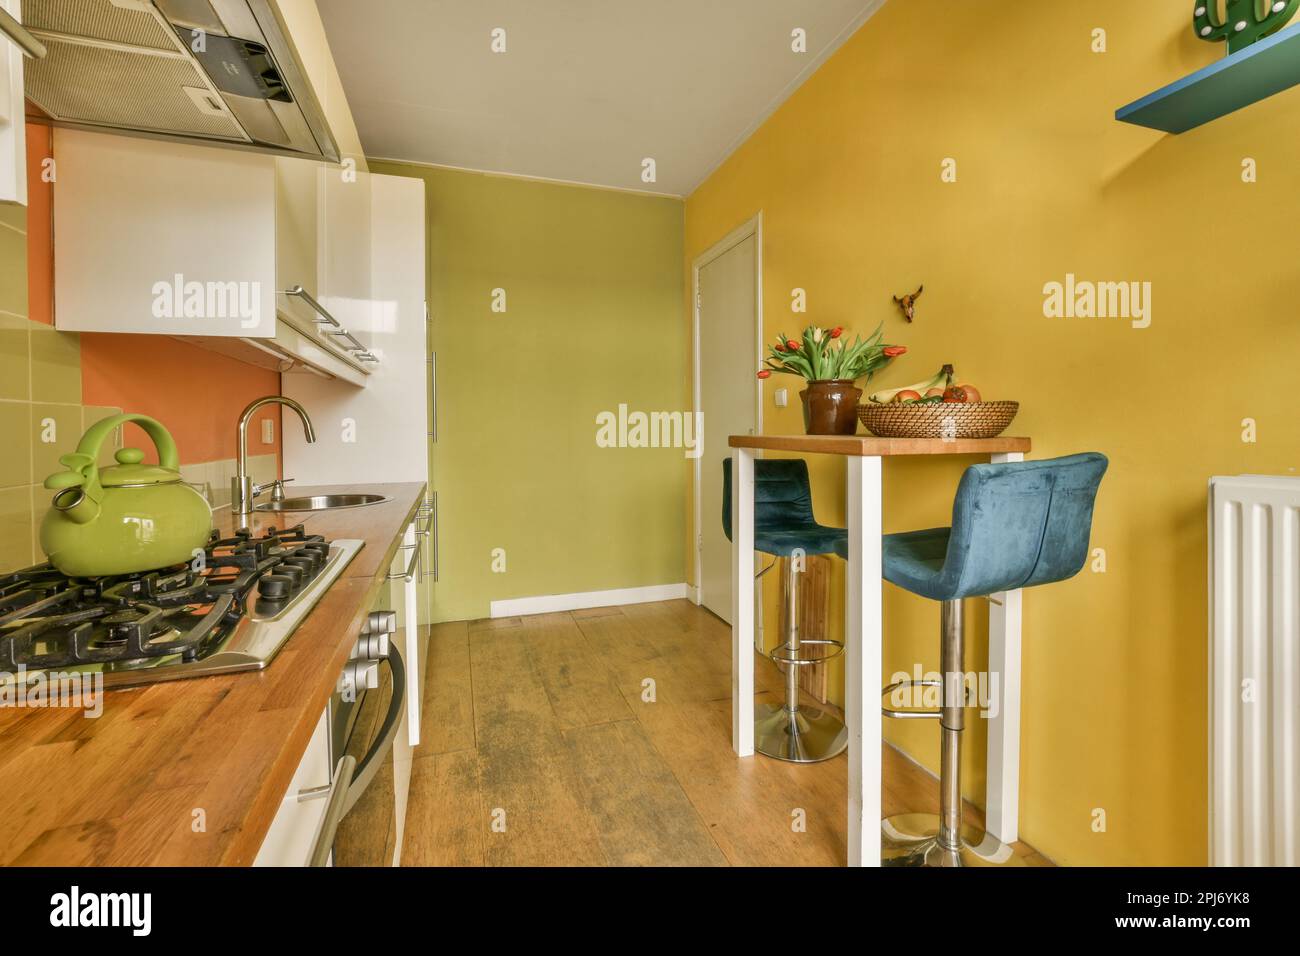 Küche und Essbereich in einem Haus mit gelben Wänden, Holzfußboden und weißen Geräten an der Wand Stockfoto